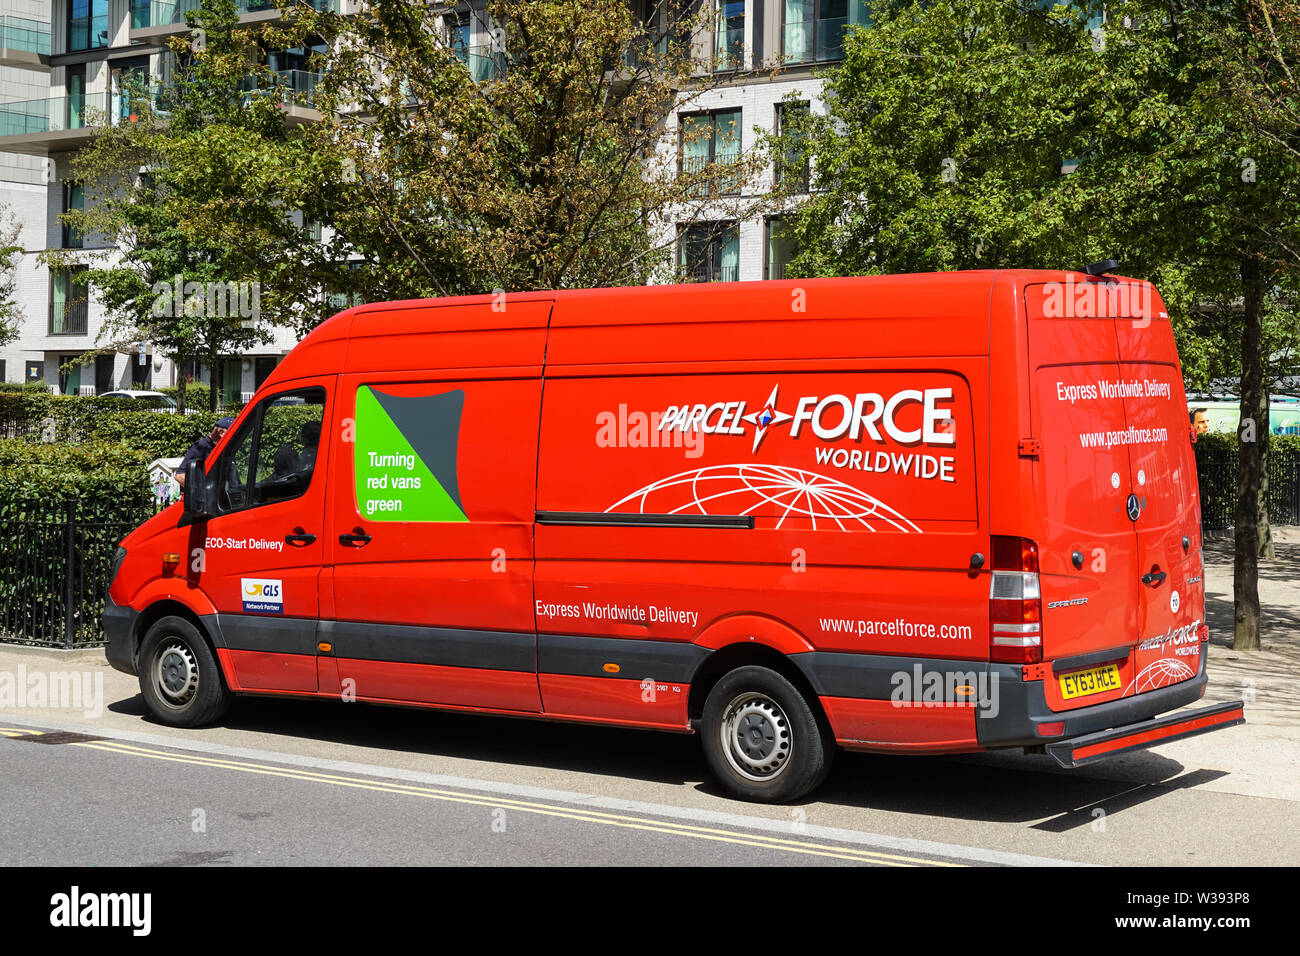 Camion de livraison de colis vigueur, Londres Angleterre Royaume-Uni UK Banque D'Images